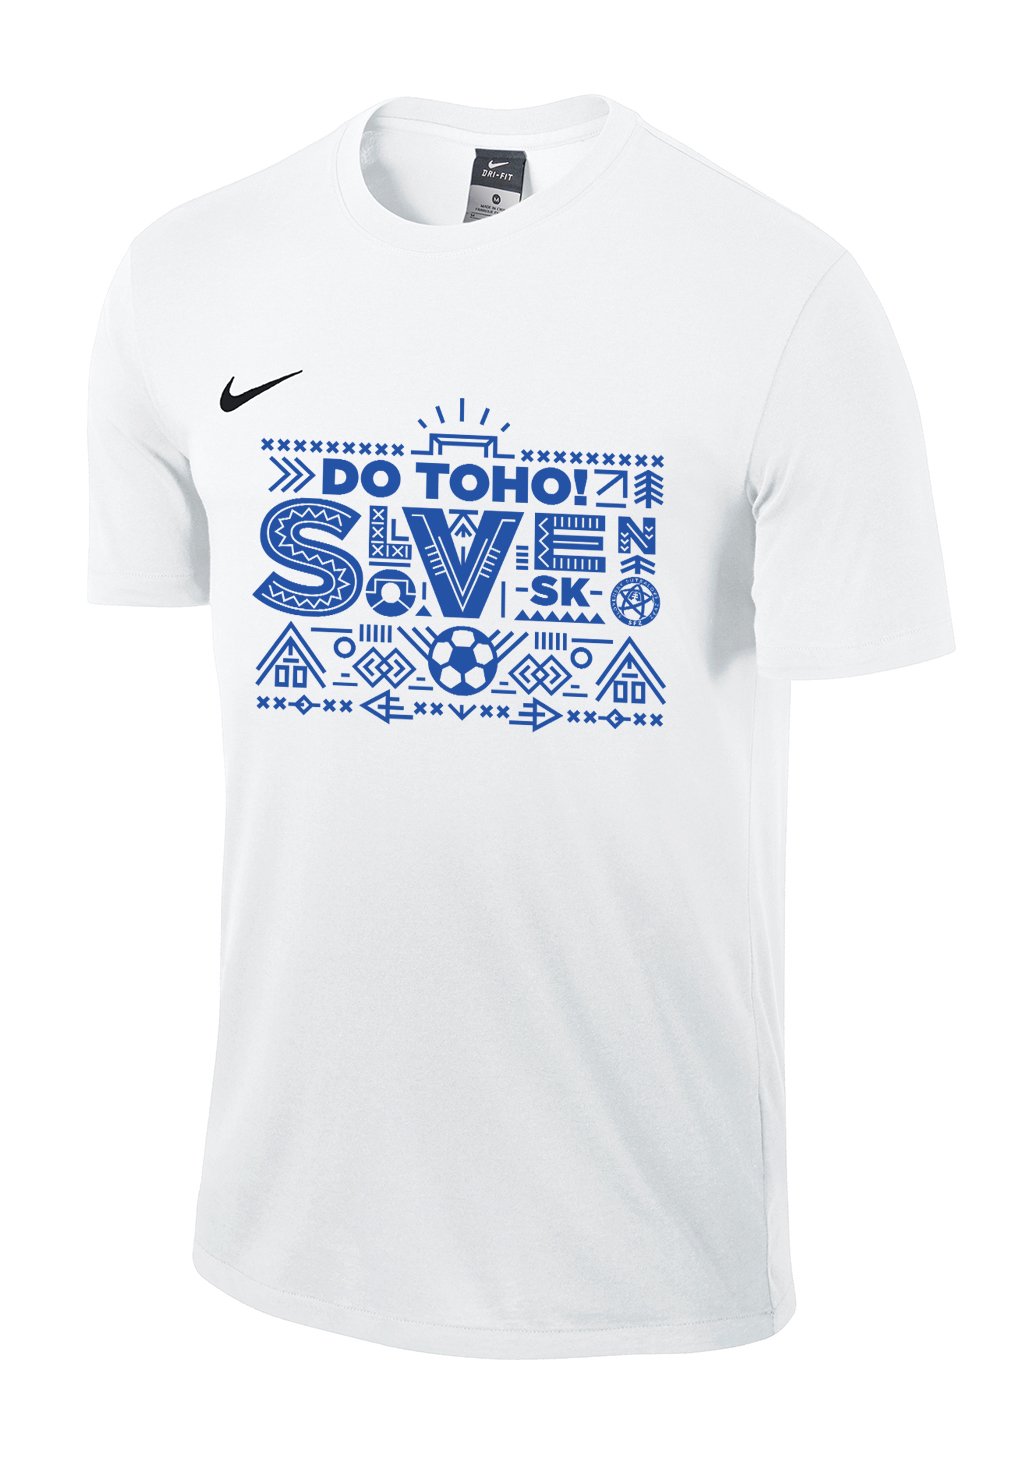 Dětské triko s krátkým rukávem Nike reprezentace Slovenska